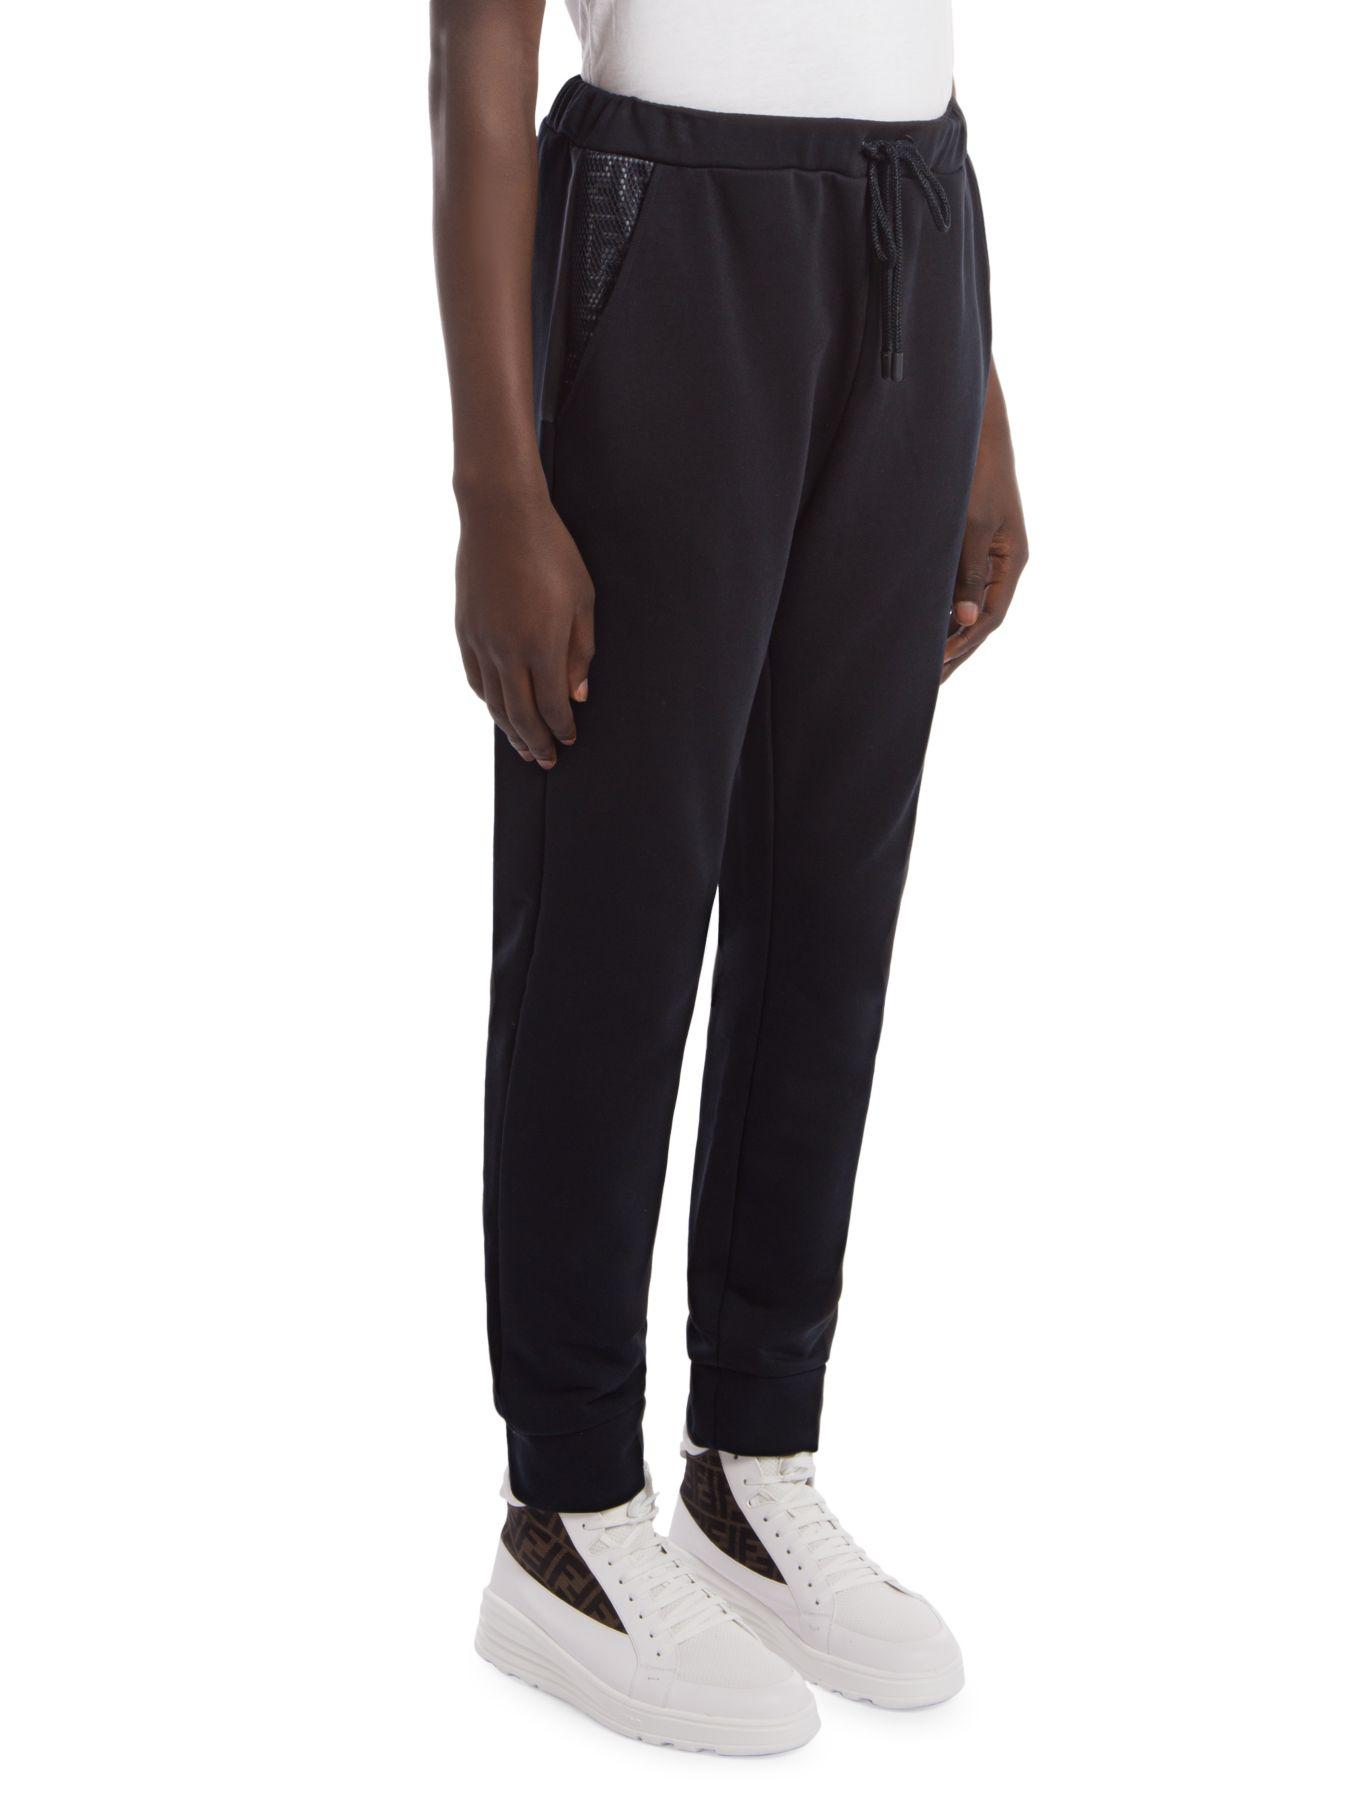 Fendi Synthetic Ff Net Detail Sweatpants in Black for Men - Lyst